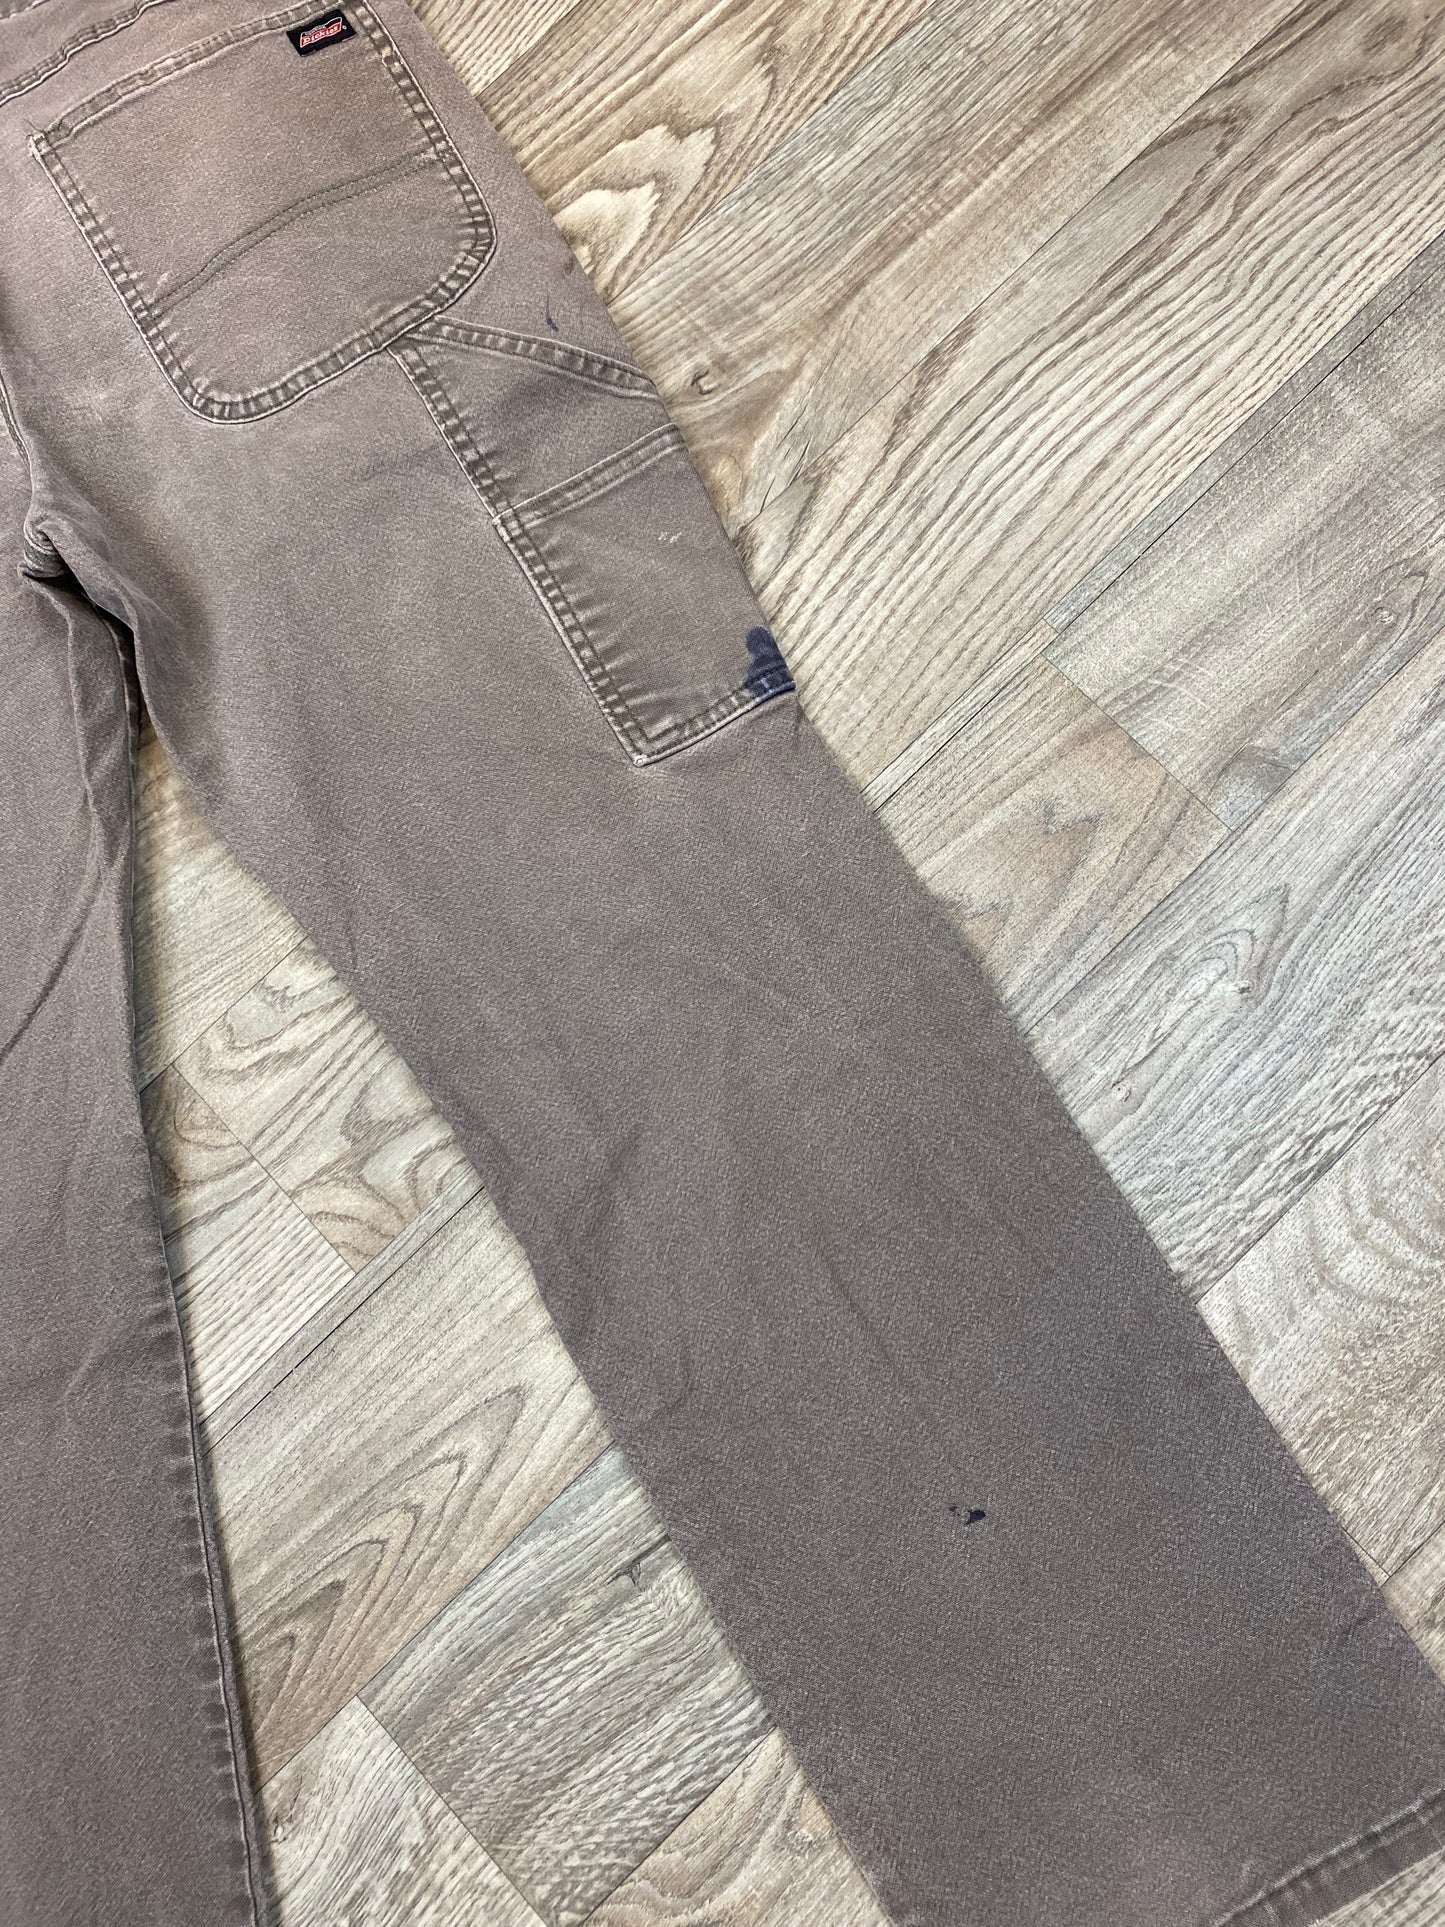 Vintage Dickies Carpenter 34x32 Distressed Pants